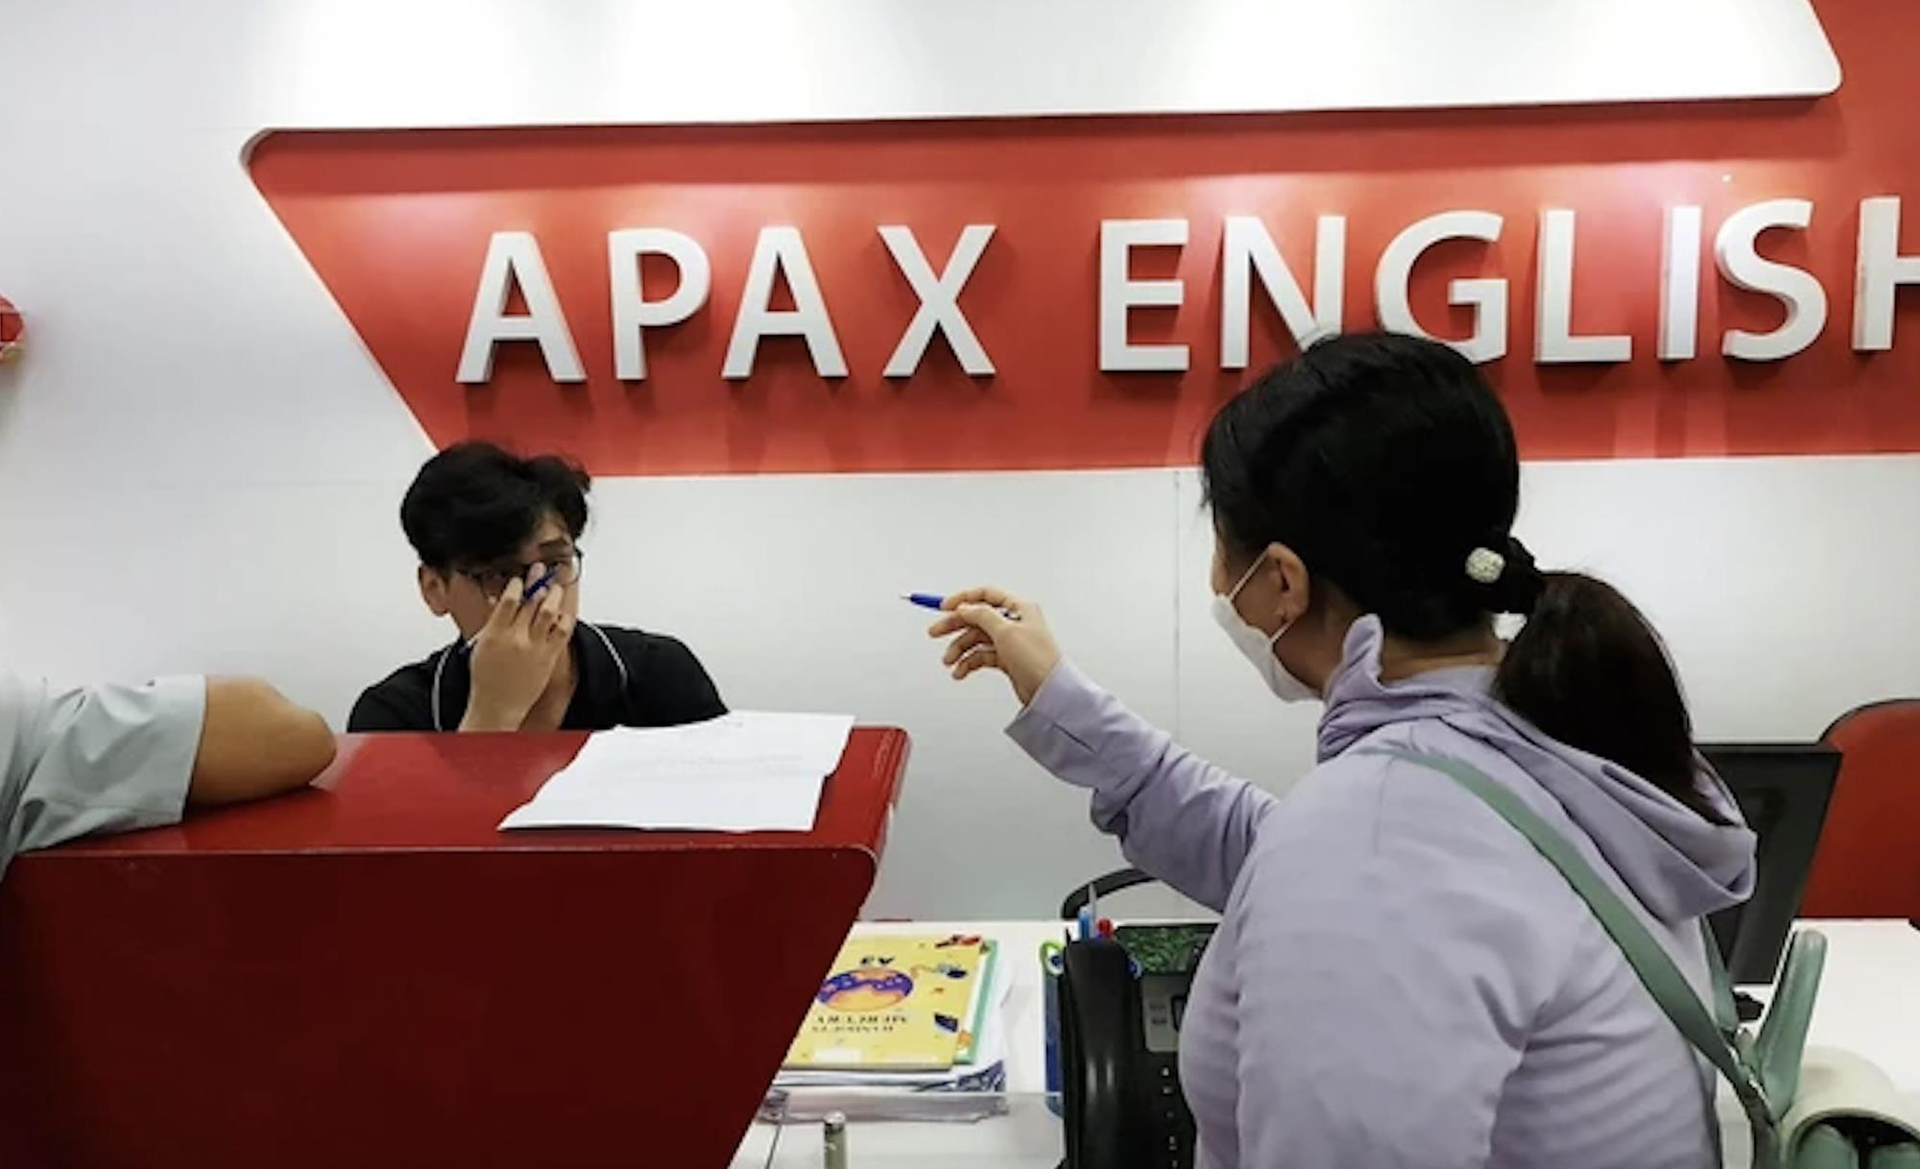 Cổ phiếu Apax Holdings (IBC) “quay xe” tăng trần 6 phiên liên tiếp, cổ đông lớn tiếp tục bị bán giải chấp thêm hàng triệu đơn vị